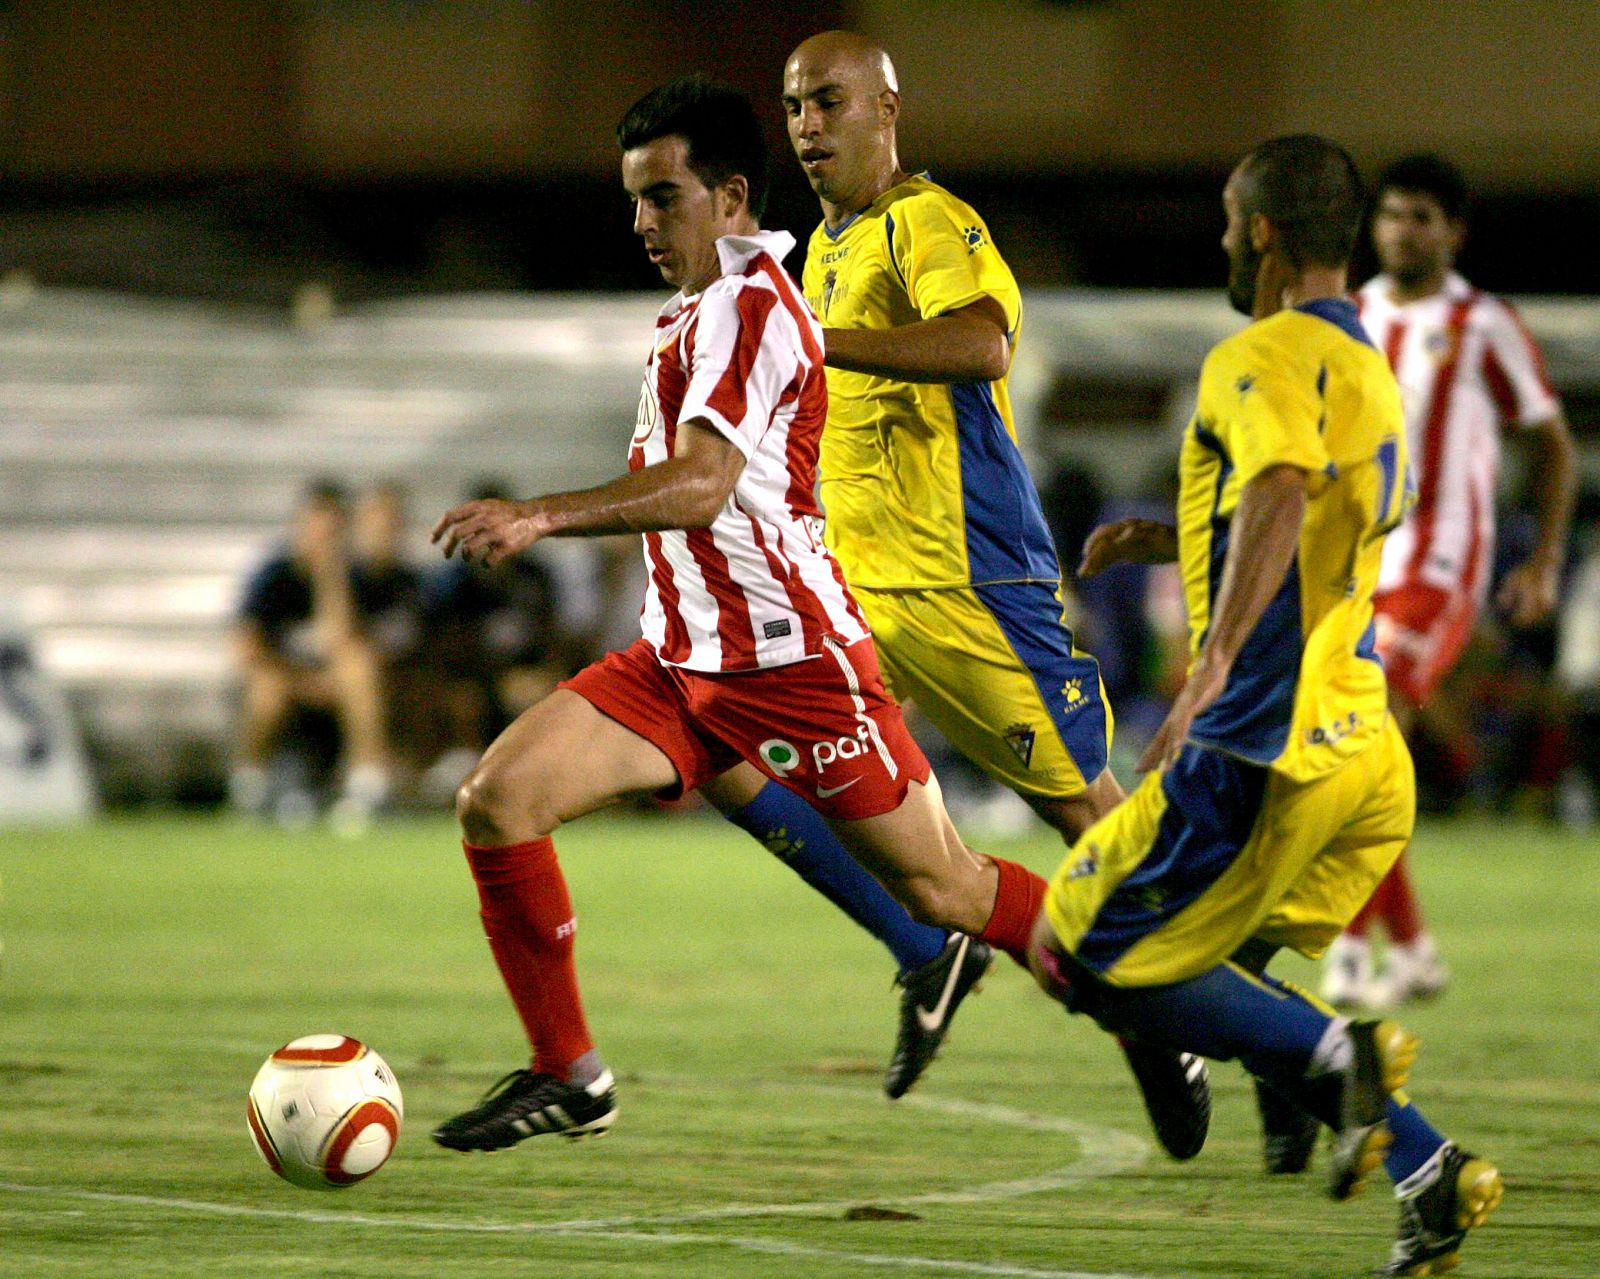 El centrocampista del At. de Madrid, Jurado, se lleva el balón ante los defensores del Cádiz.